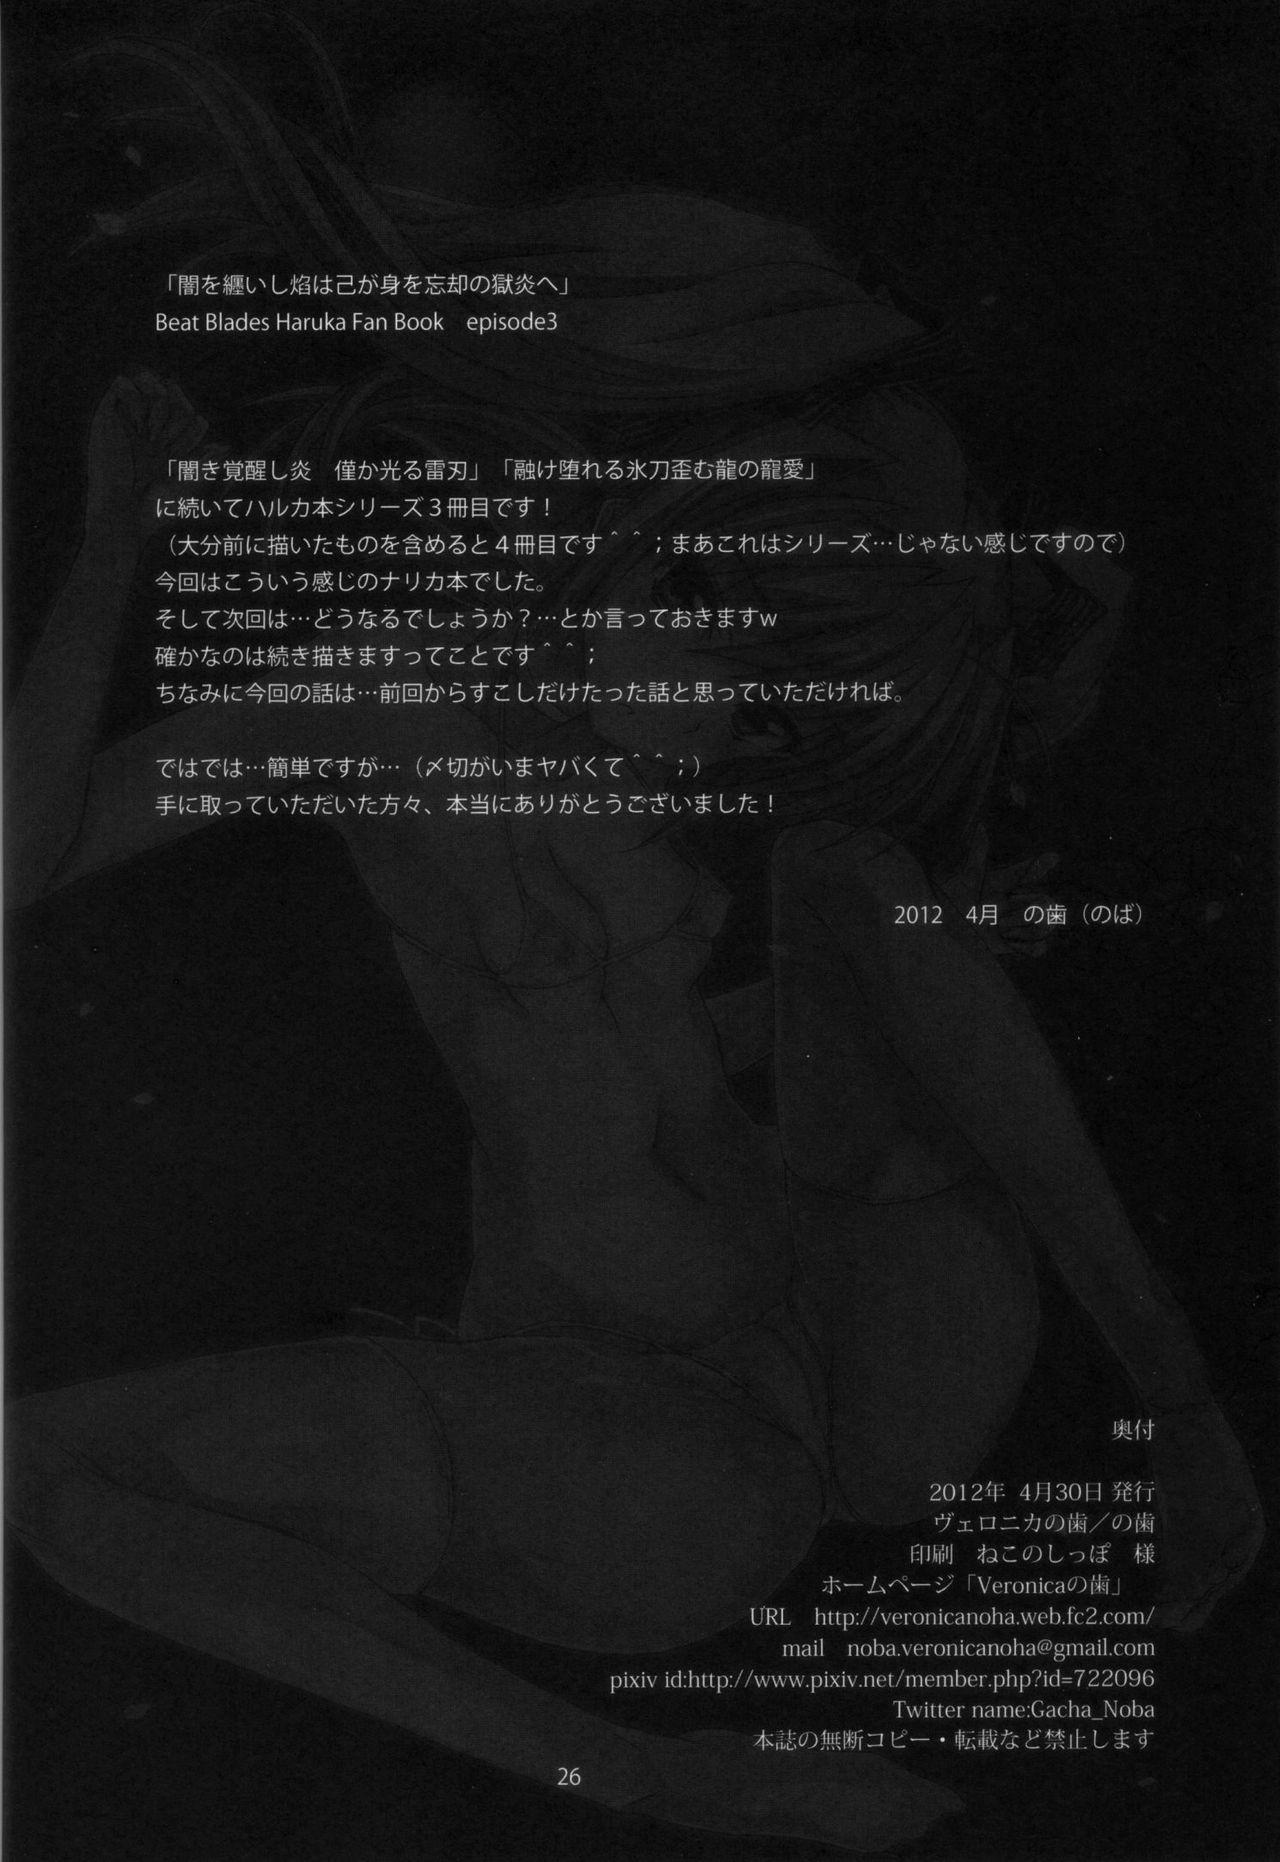 Puta Yami wo Matoishi Homura wa Ono ga Mi wo Boukyaku no Gokuen e - Beat blades haruka Female Domination - Page 25